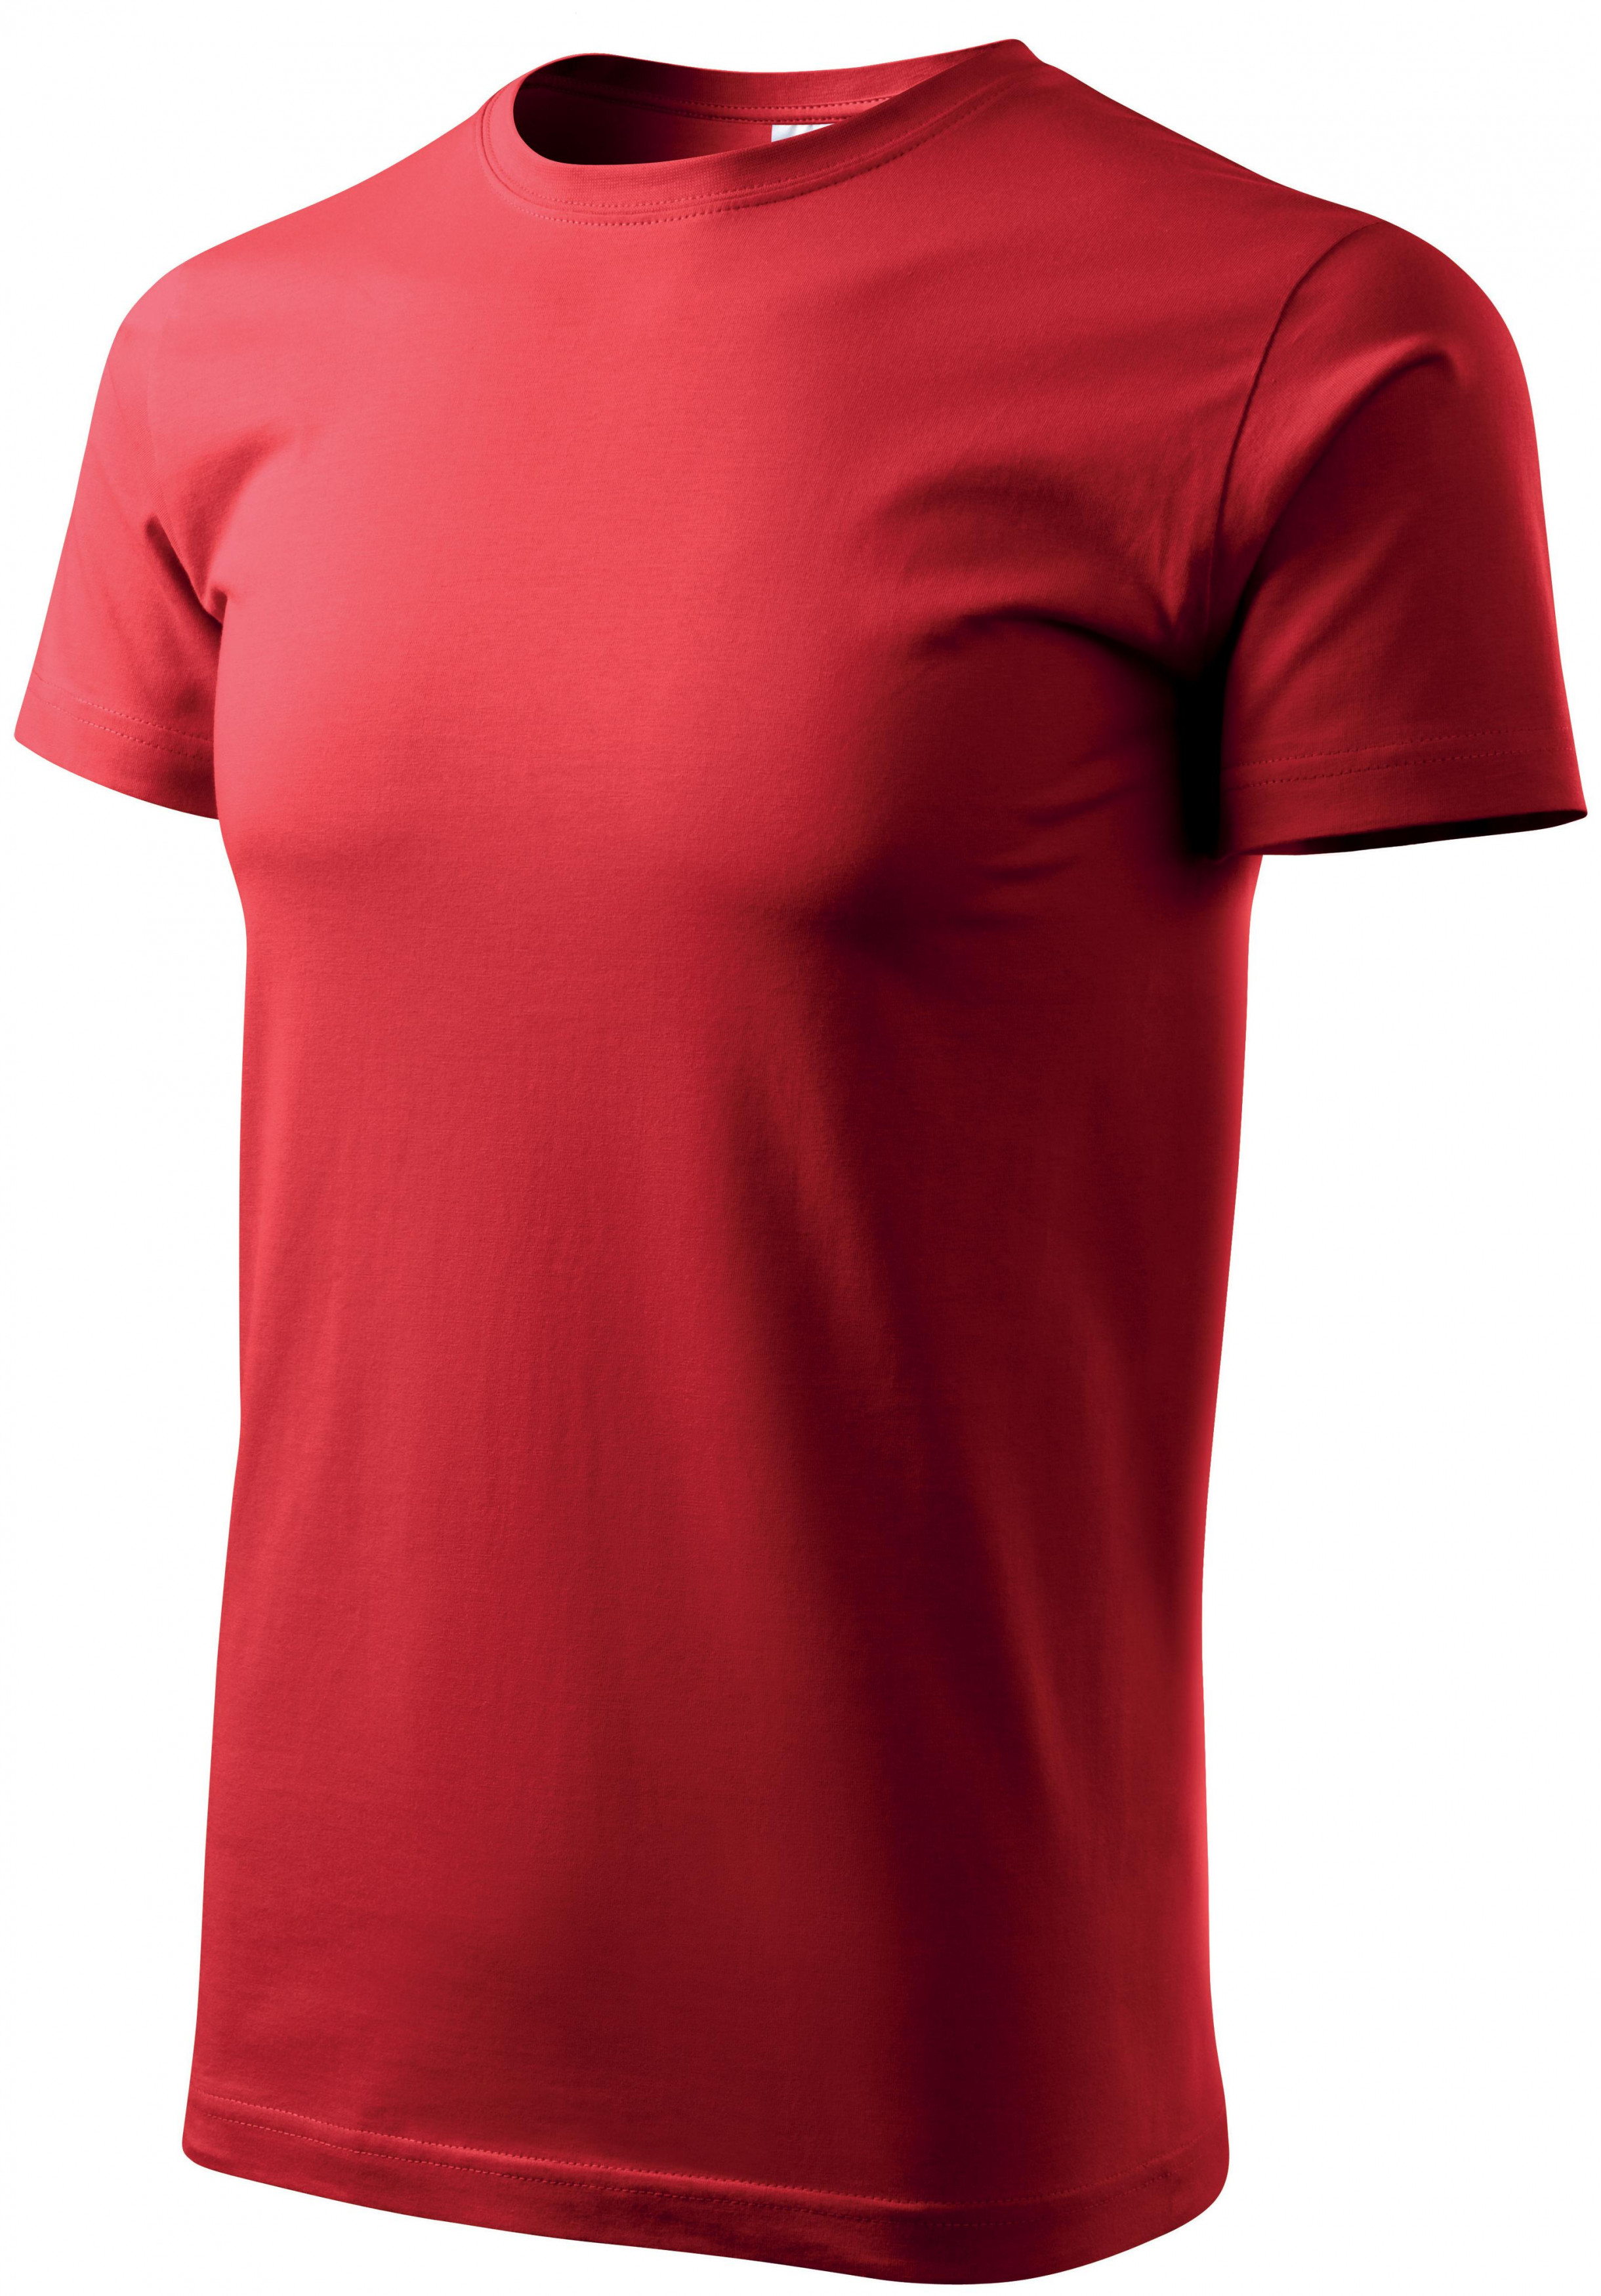 Pánske tričko jednoduché, červená, M